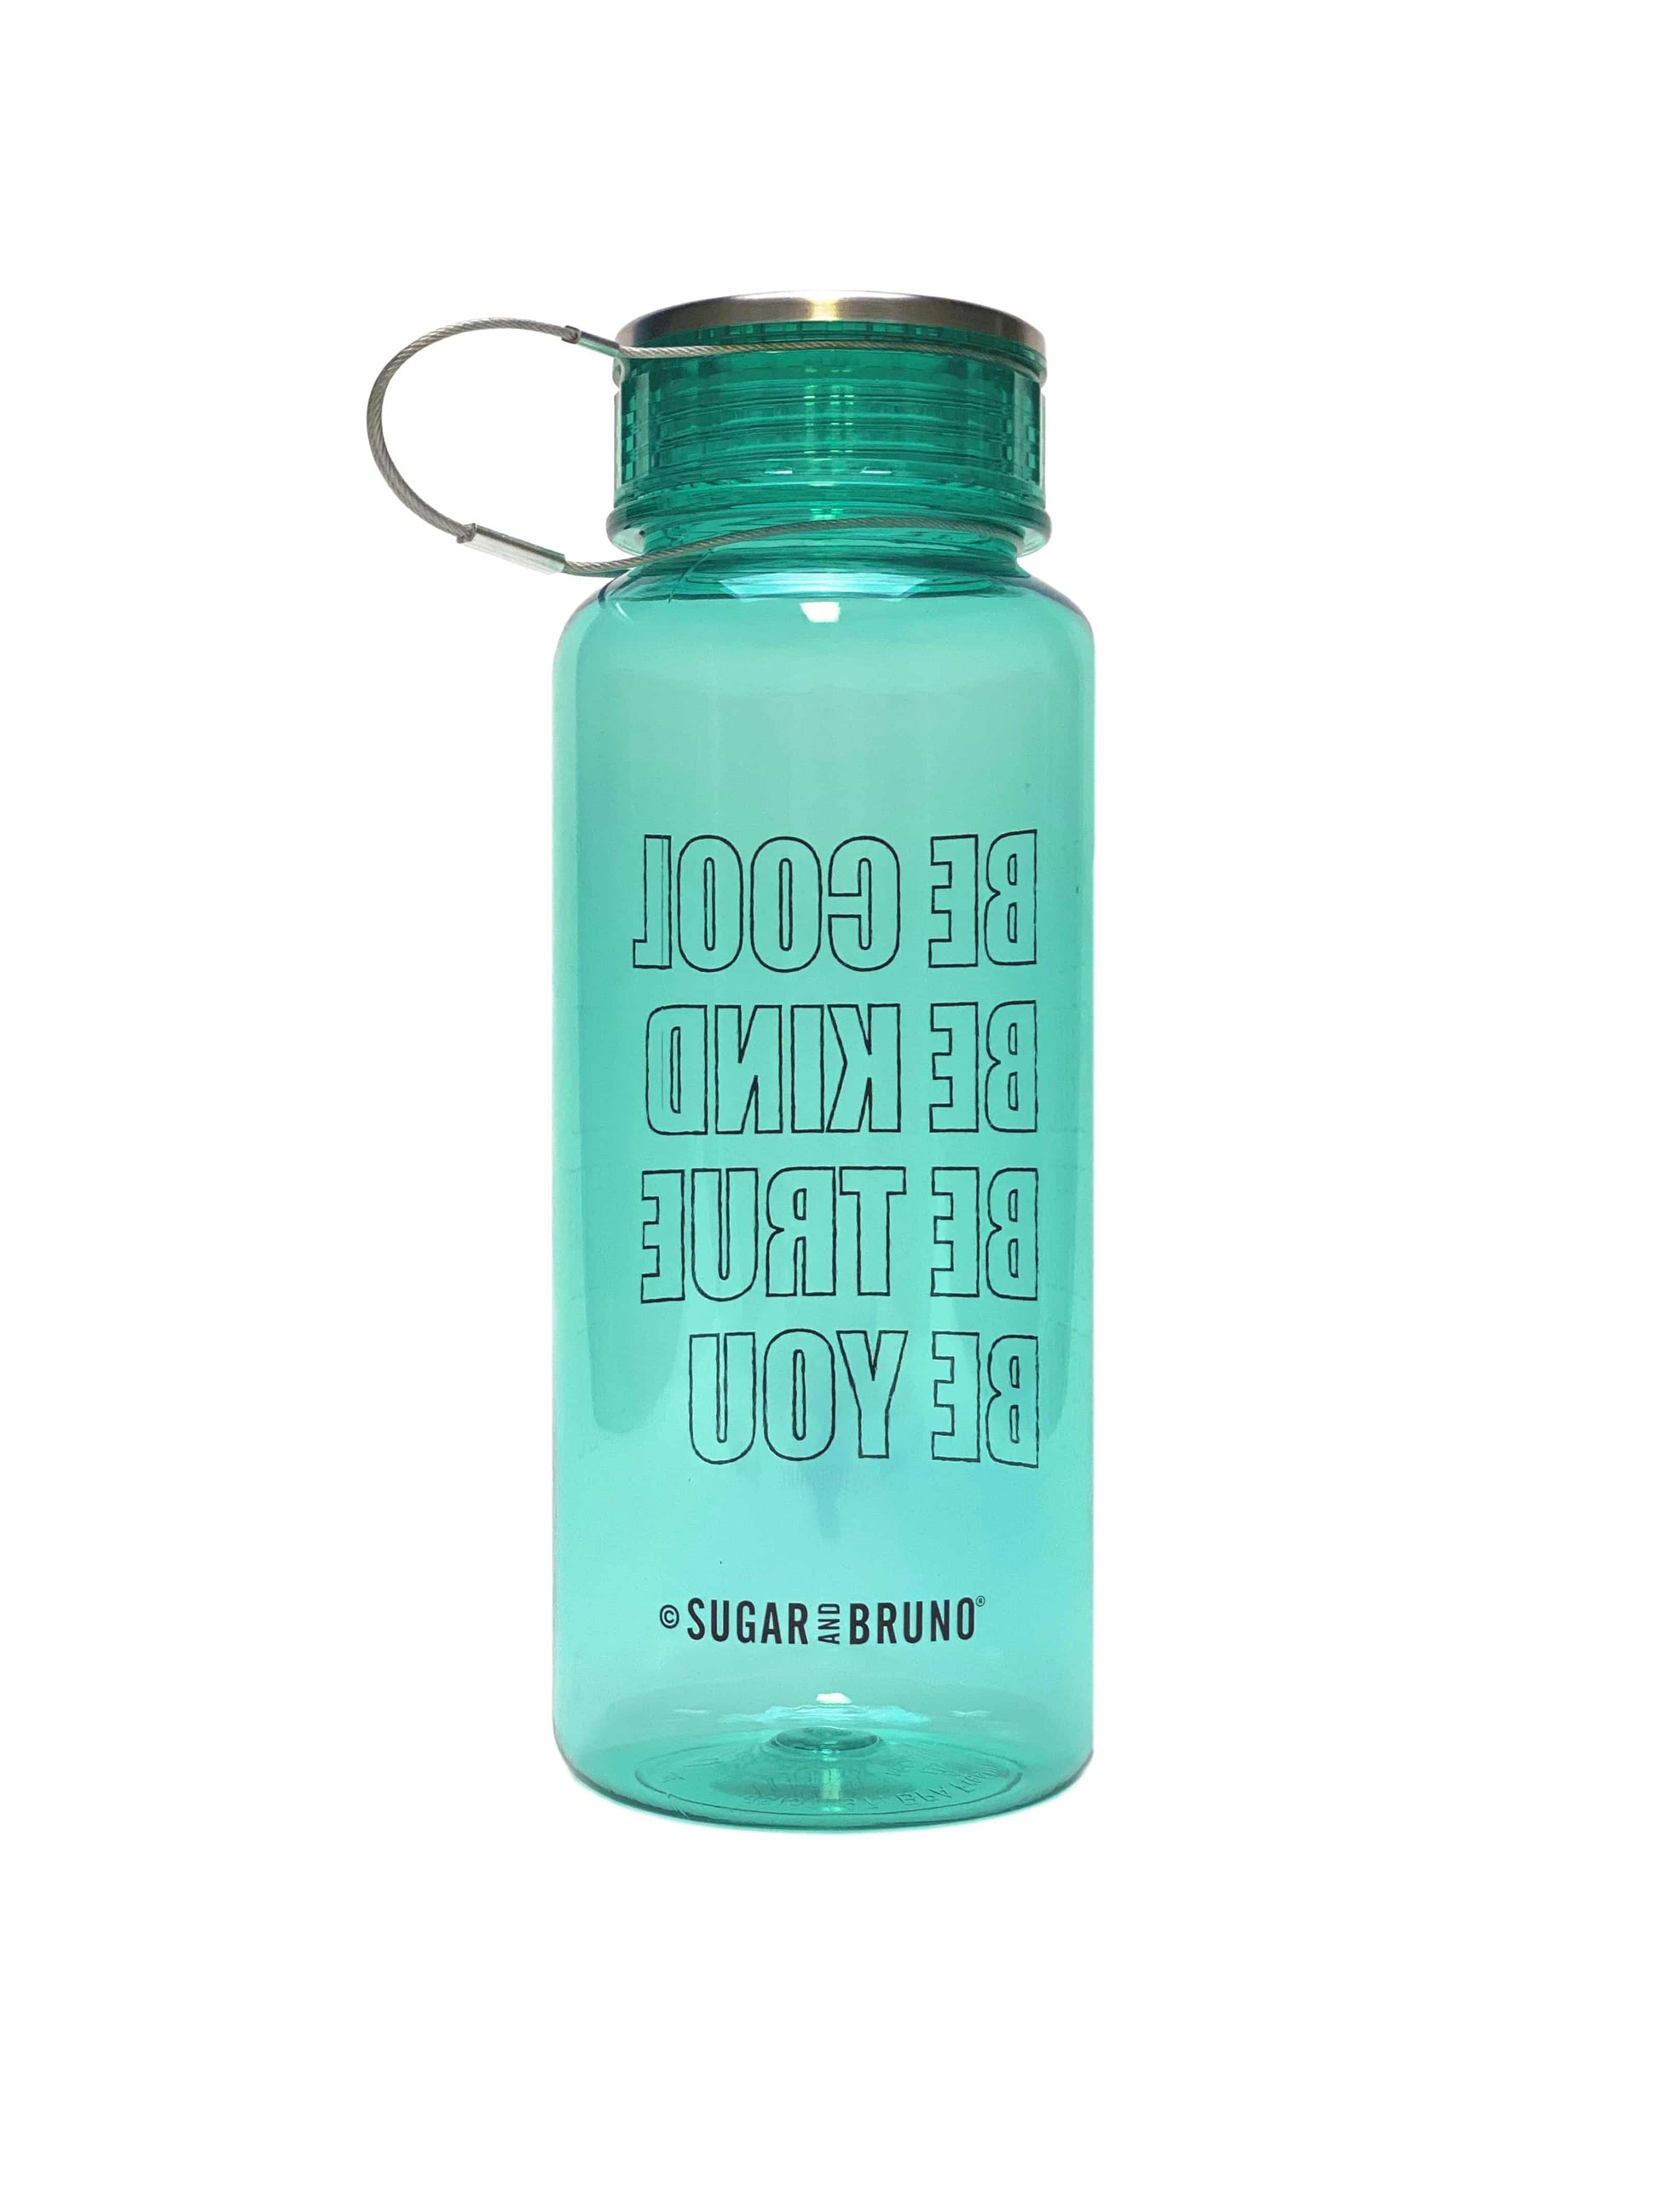 Be Cool Bottle - Mint